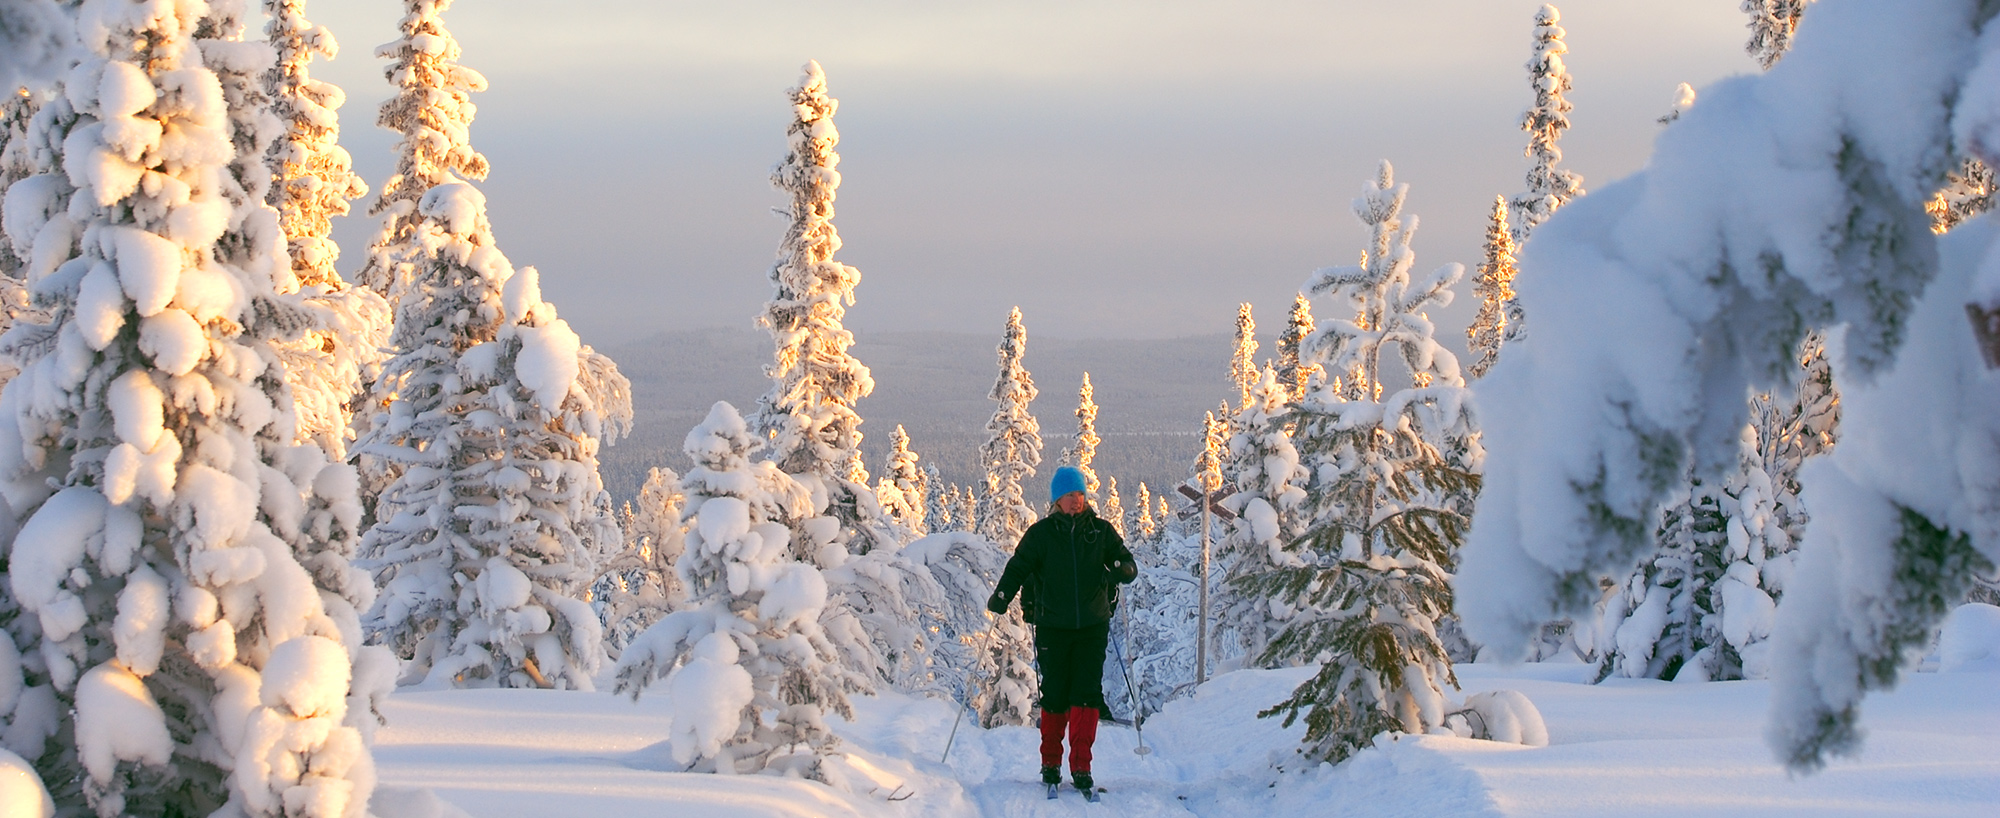 Att åka skidor i Olivehällsrundans skidspår, i Ottsjö, är en fjällupplevelse i världsklass i Södra Årefjällen.